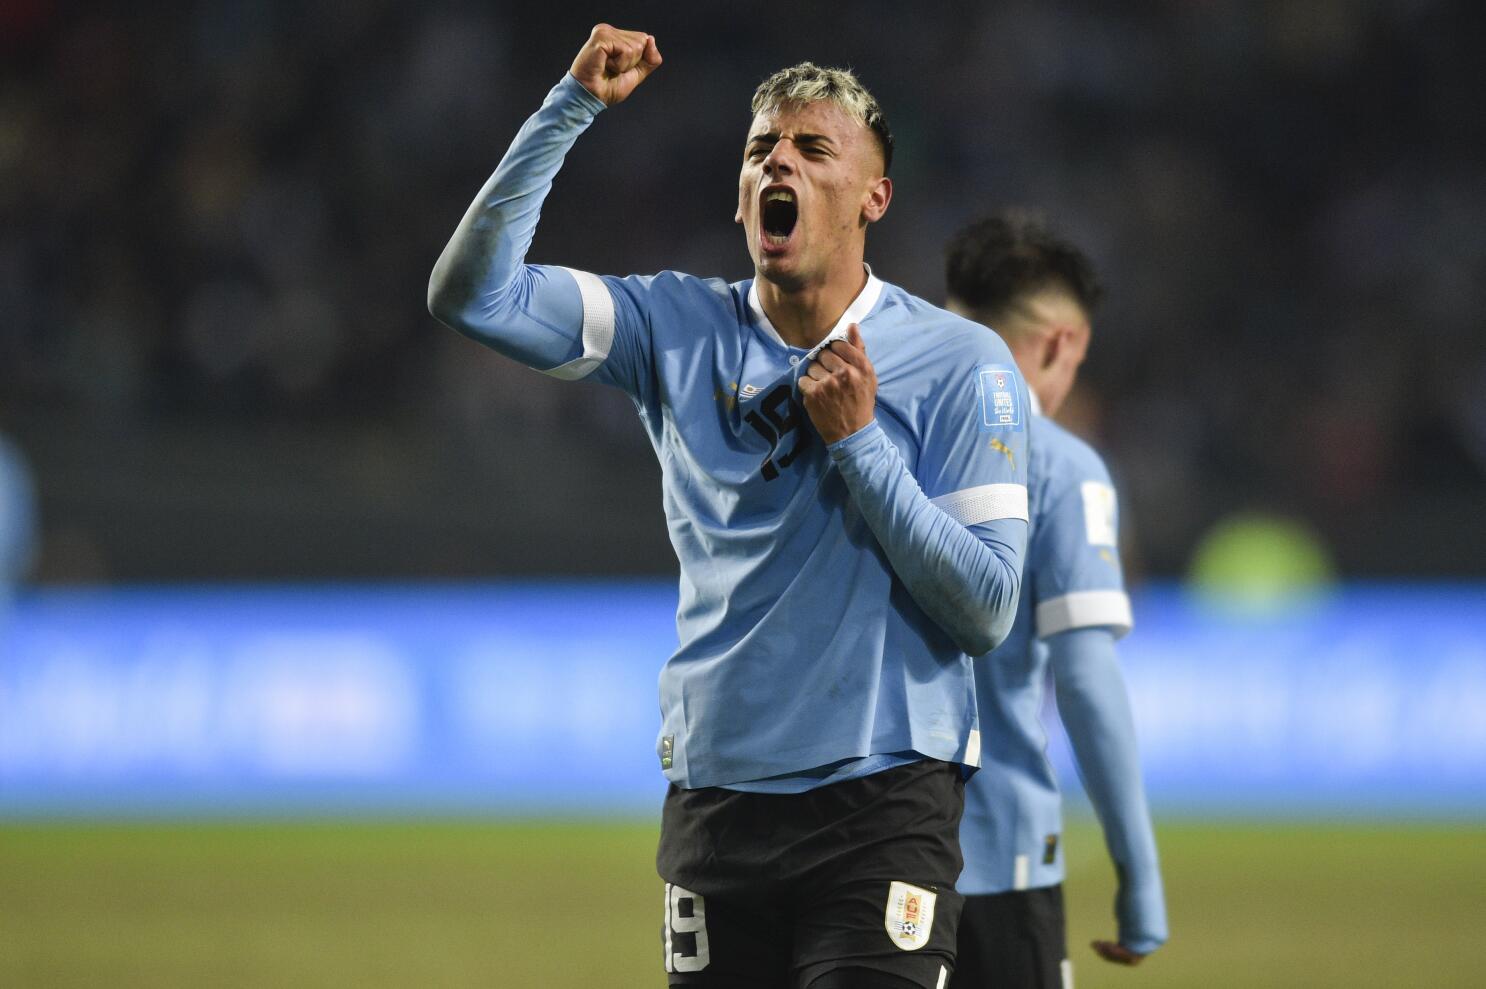 Uruguay es campeón mundial sub 20 por primera vez en la historia